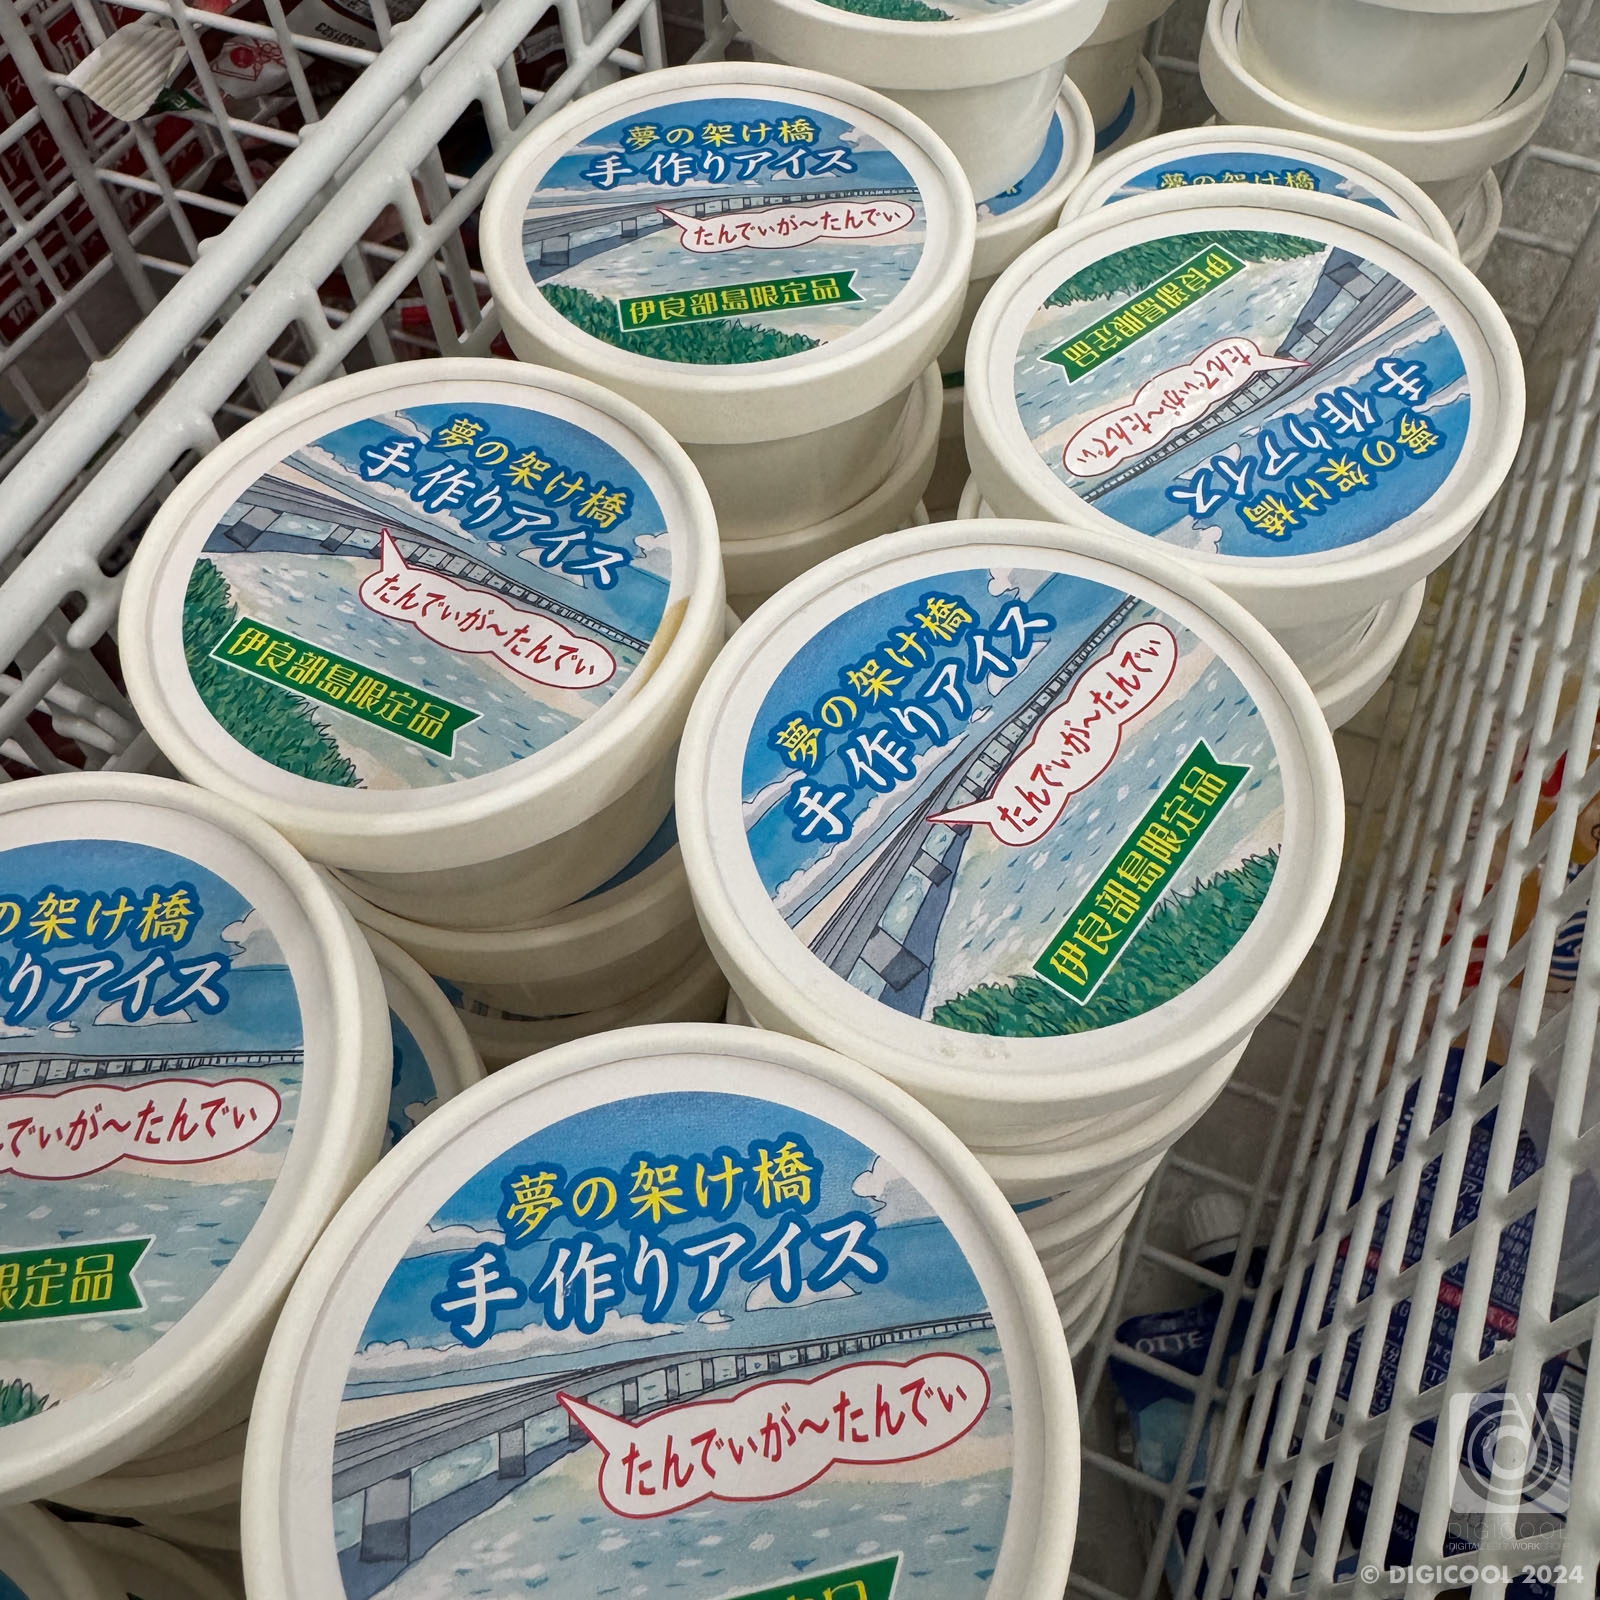 沖縄県 宮古島市・伊良部島の「シモジスーパー」にしか売っていない名物アイスが暑い日はたまらない〜。